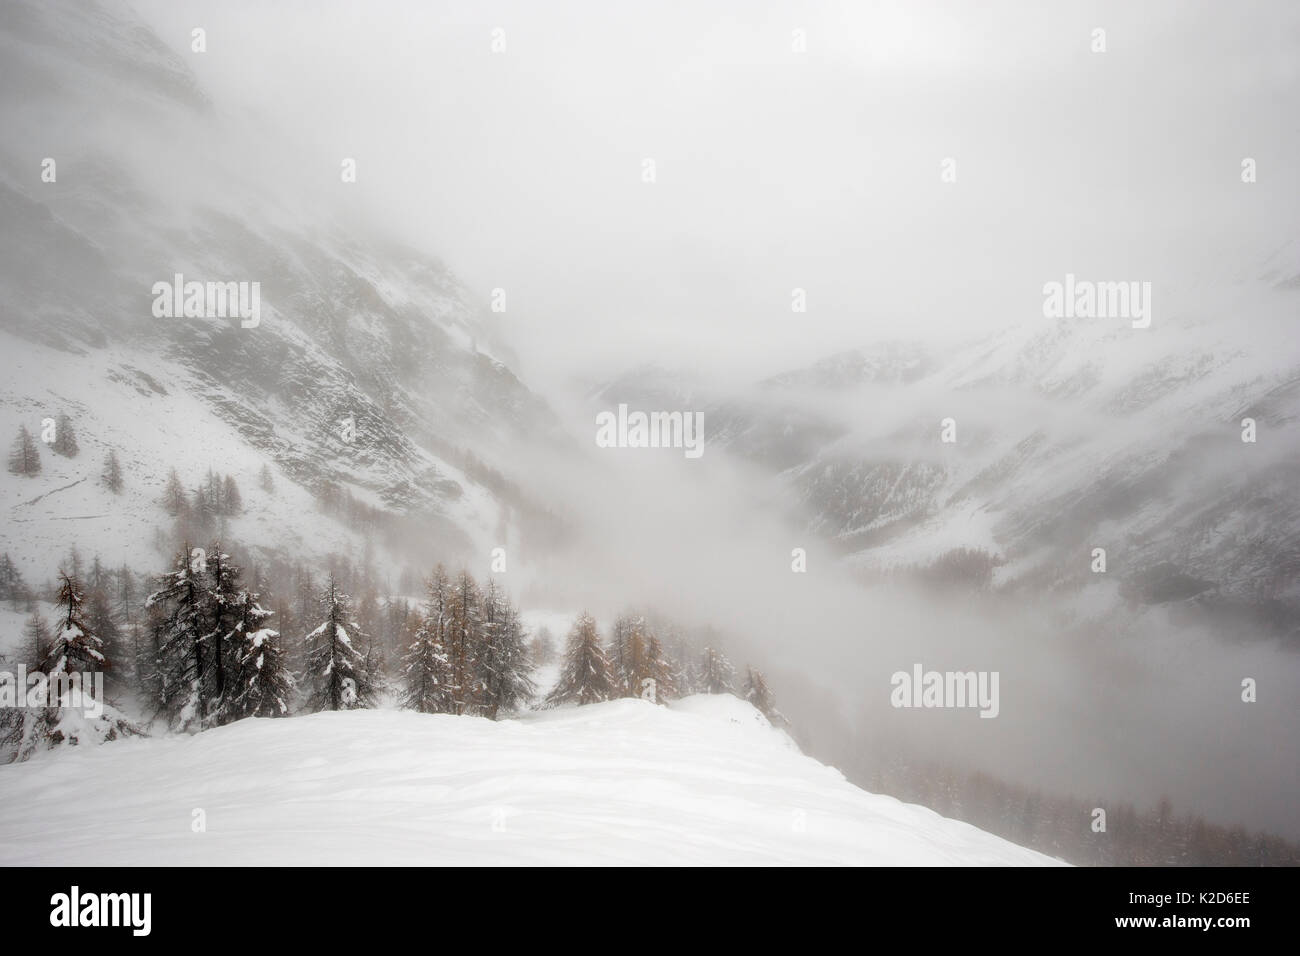 Paesaggio invernale con ripidi fianchi delle montagne coperte di neve in una nebbiosa giornata. Il Parco Nazionale del Gran Paradiso, l'Italia, novembre 2014. Foto Stock